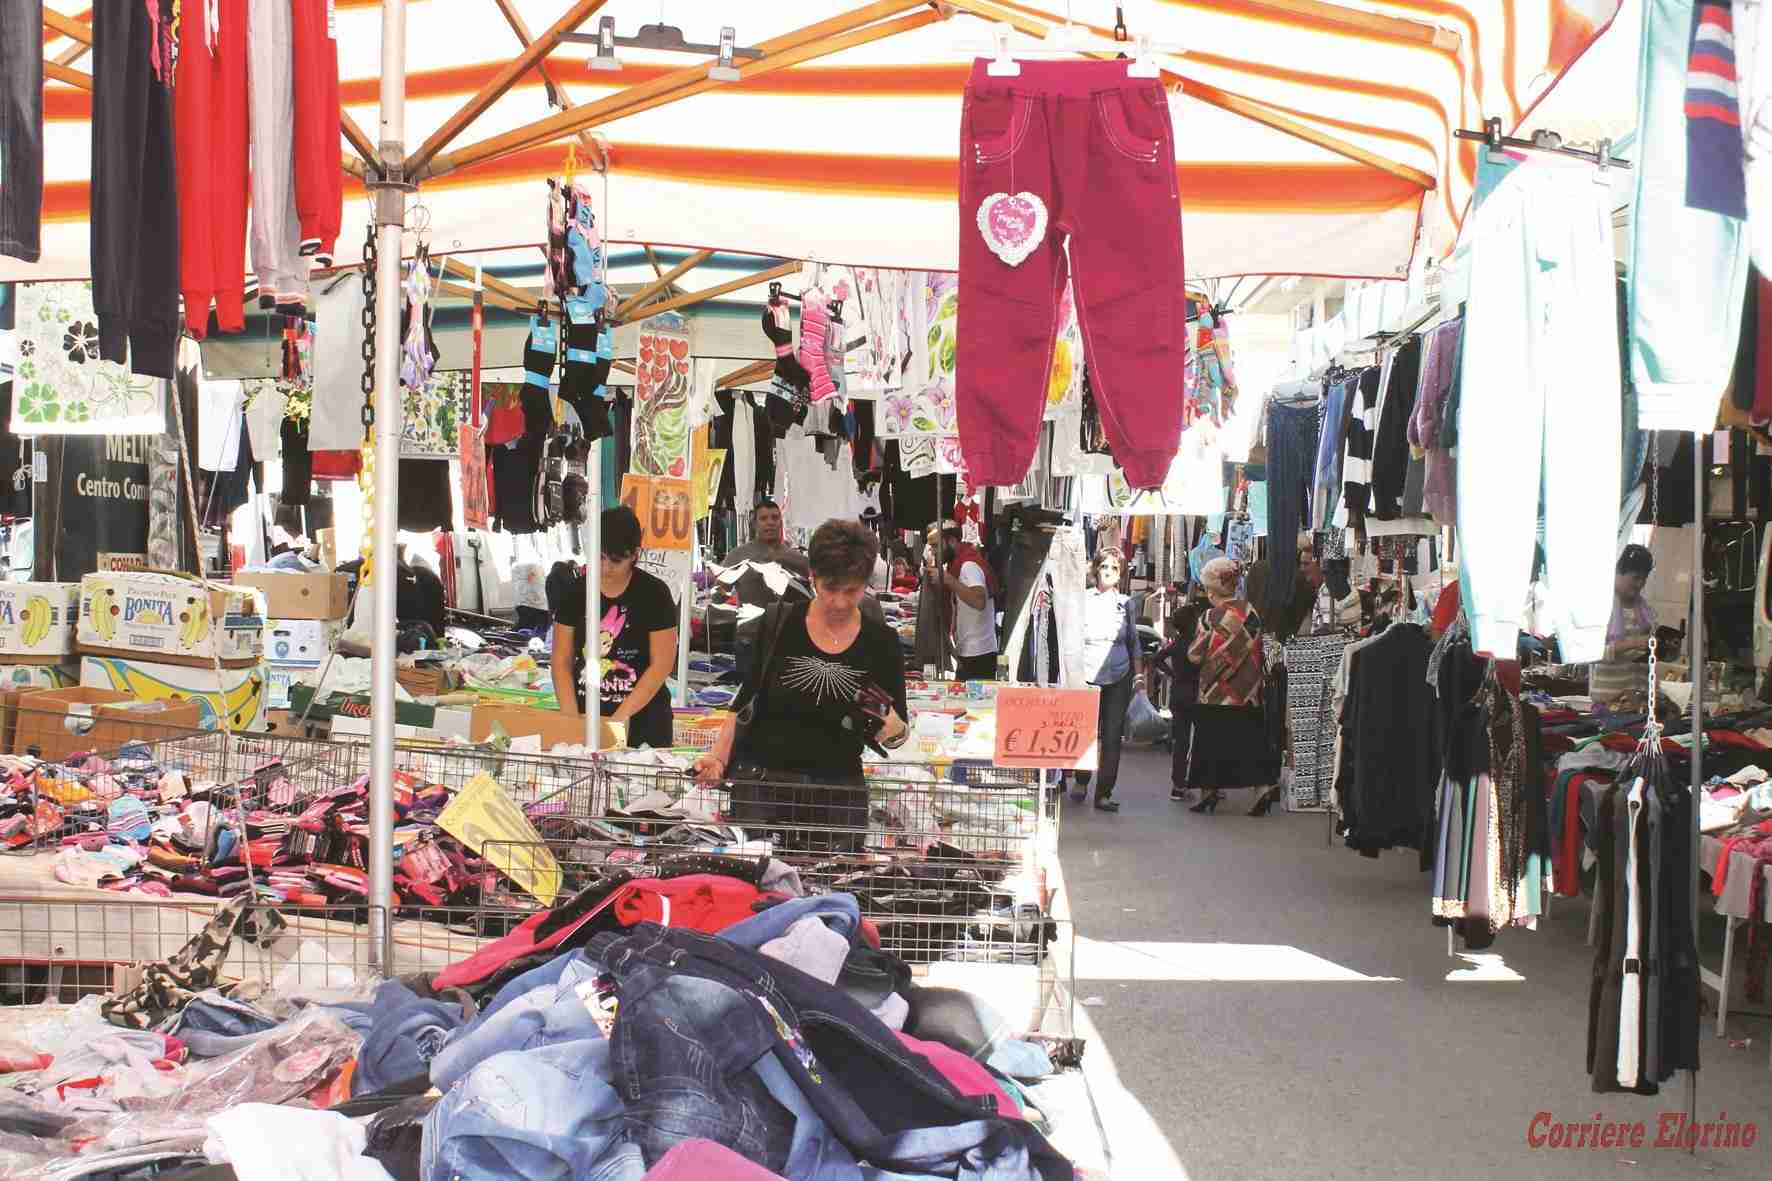 Domani si svolgerà regolarmente la fiera mercato quindicinale in Via Aldo Moro